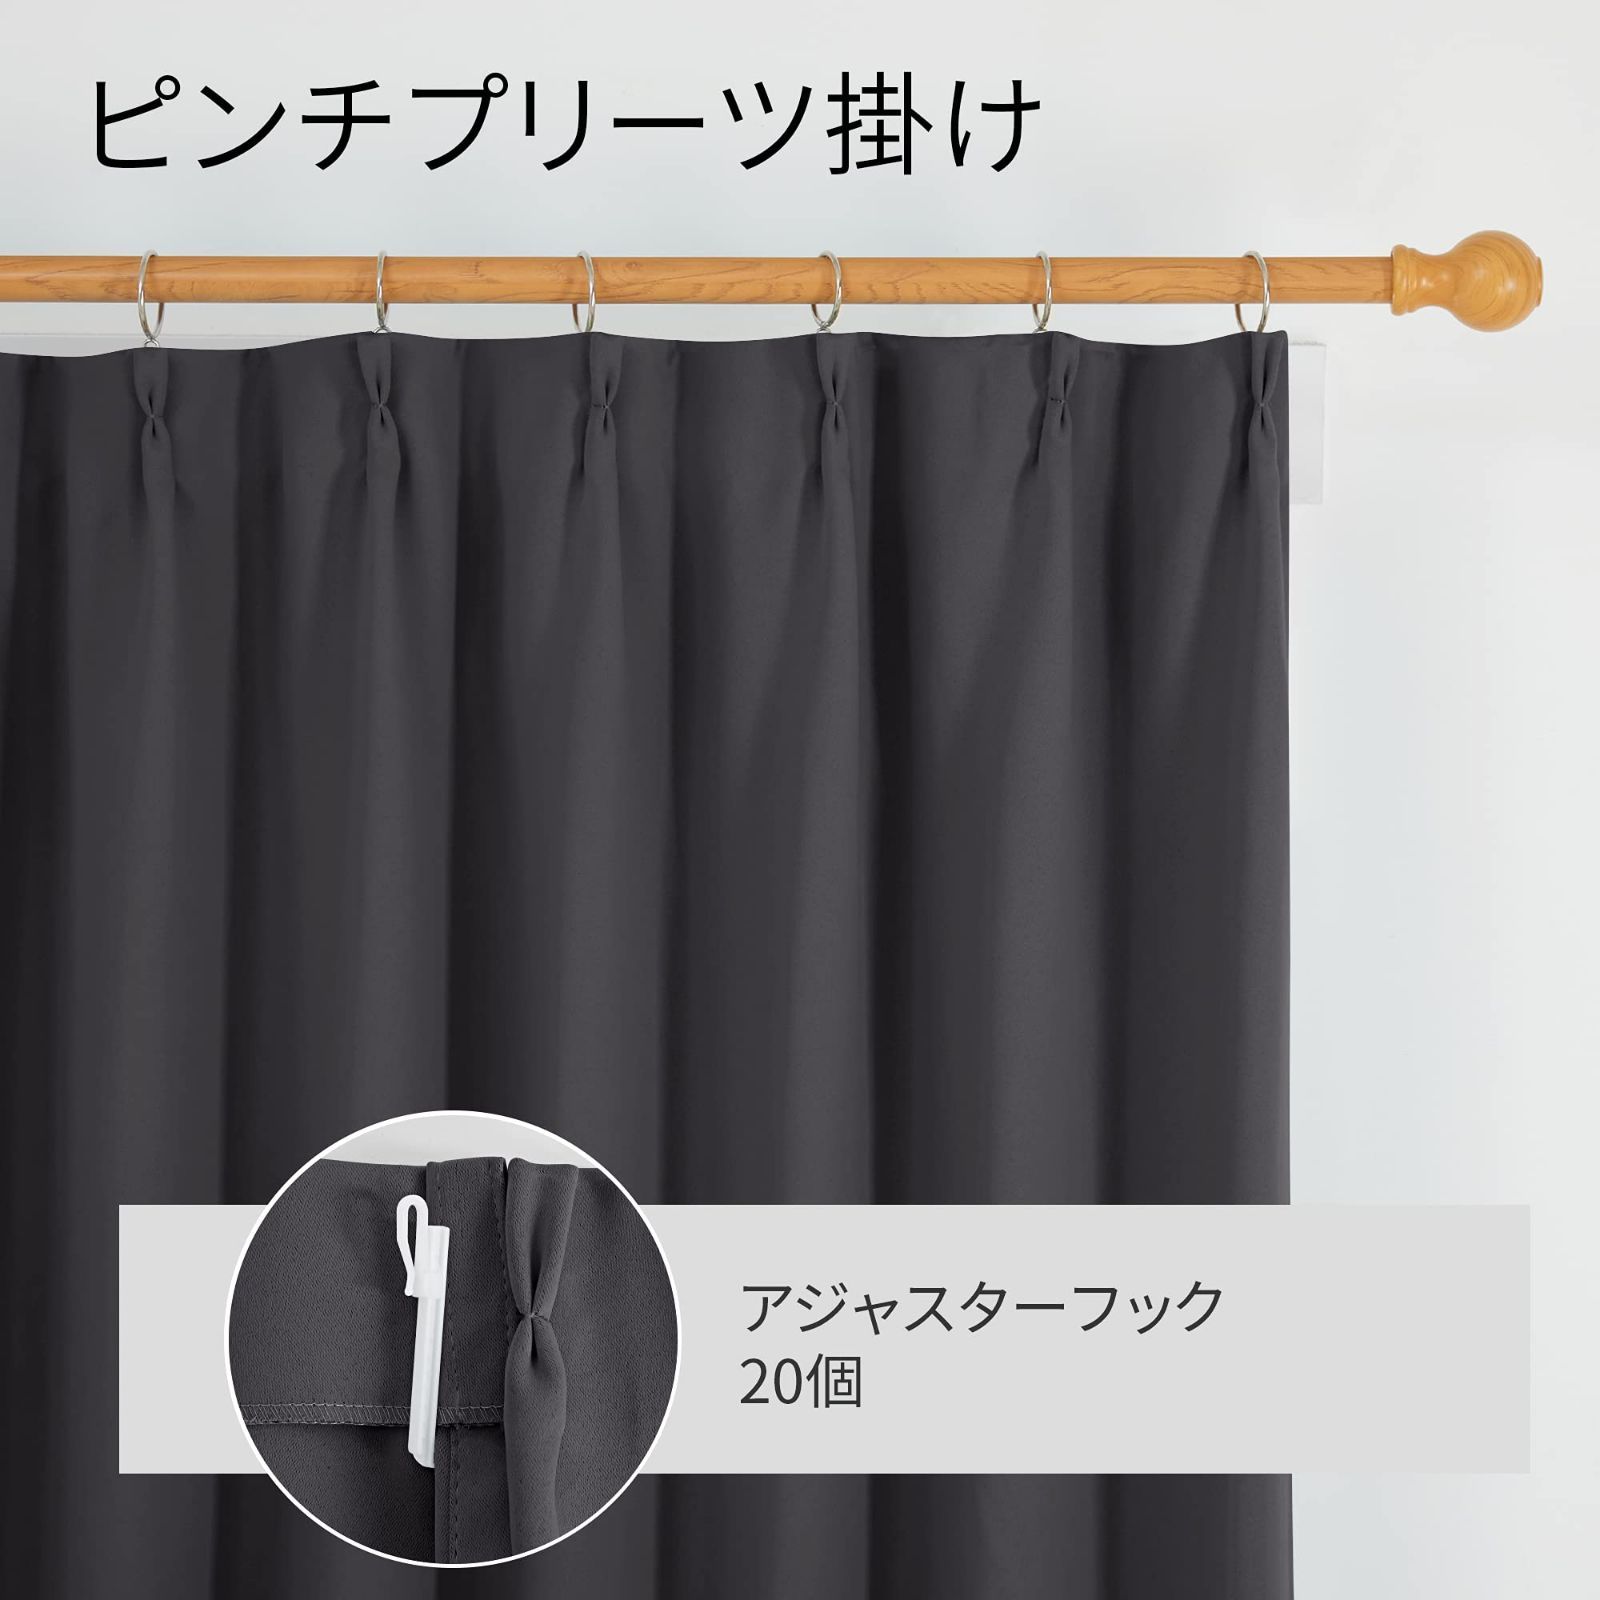 【色: ブラウン】Deconovo 1級遮光カーテン 2枚入 幅150cm丈20